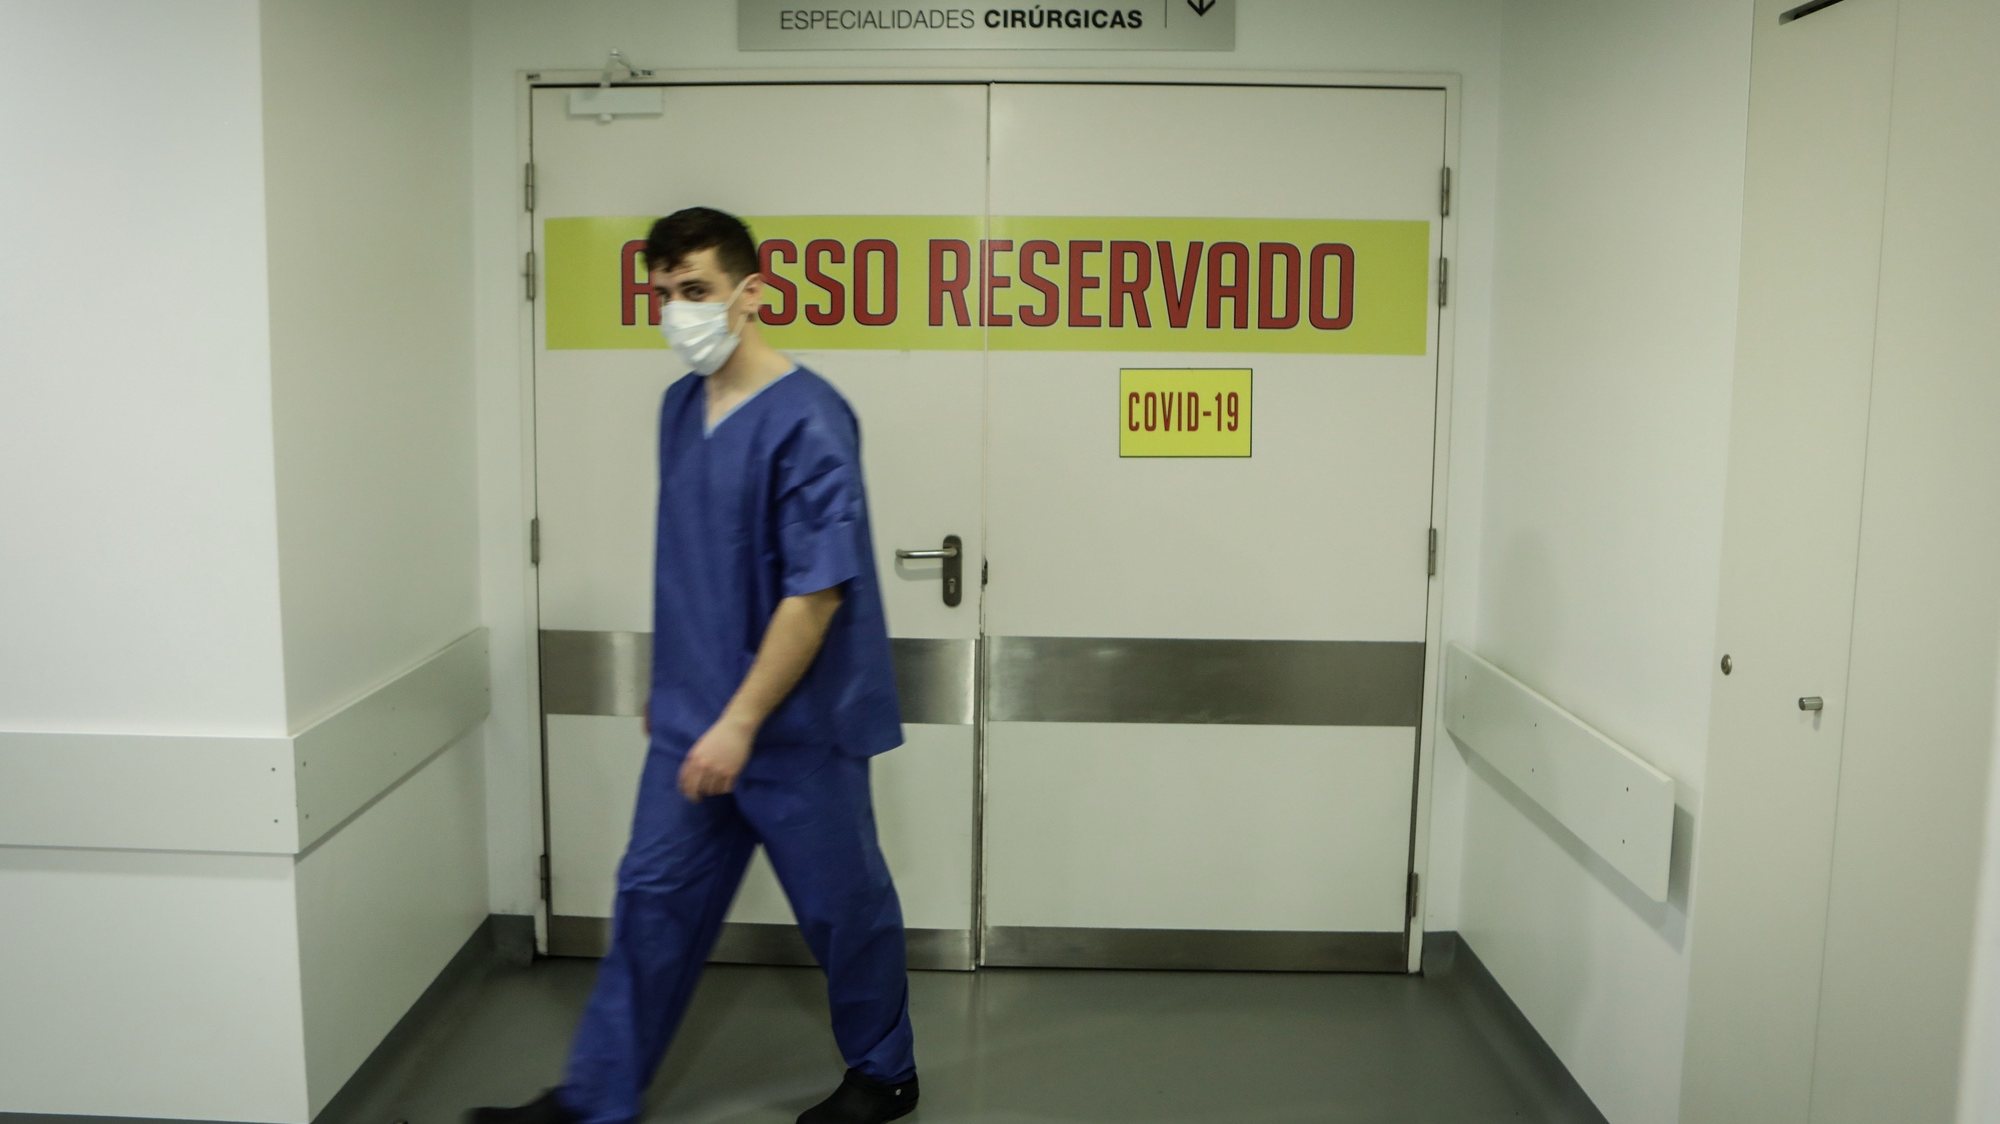 O Hospital Sousa Martins da Guarda respondeu com “sucesso” à pandemia da covid-19 e atravessa um período de acalmia que permite repor serviços nos locais originais e reduzir a área de internamento de 110 para 40 camas, Guarda, 20 de maio de 2020. (ACOMPANHA TEXTO DE 21/05/2020) MIGUEL PEREIRA DA SILVA/LUSA